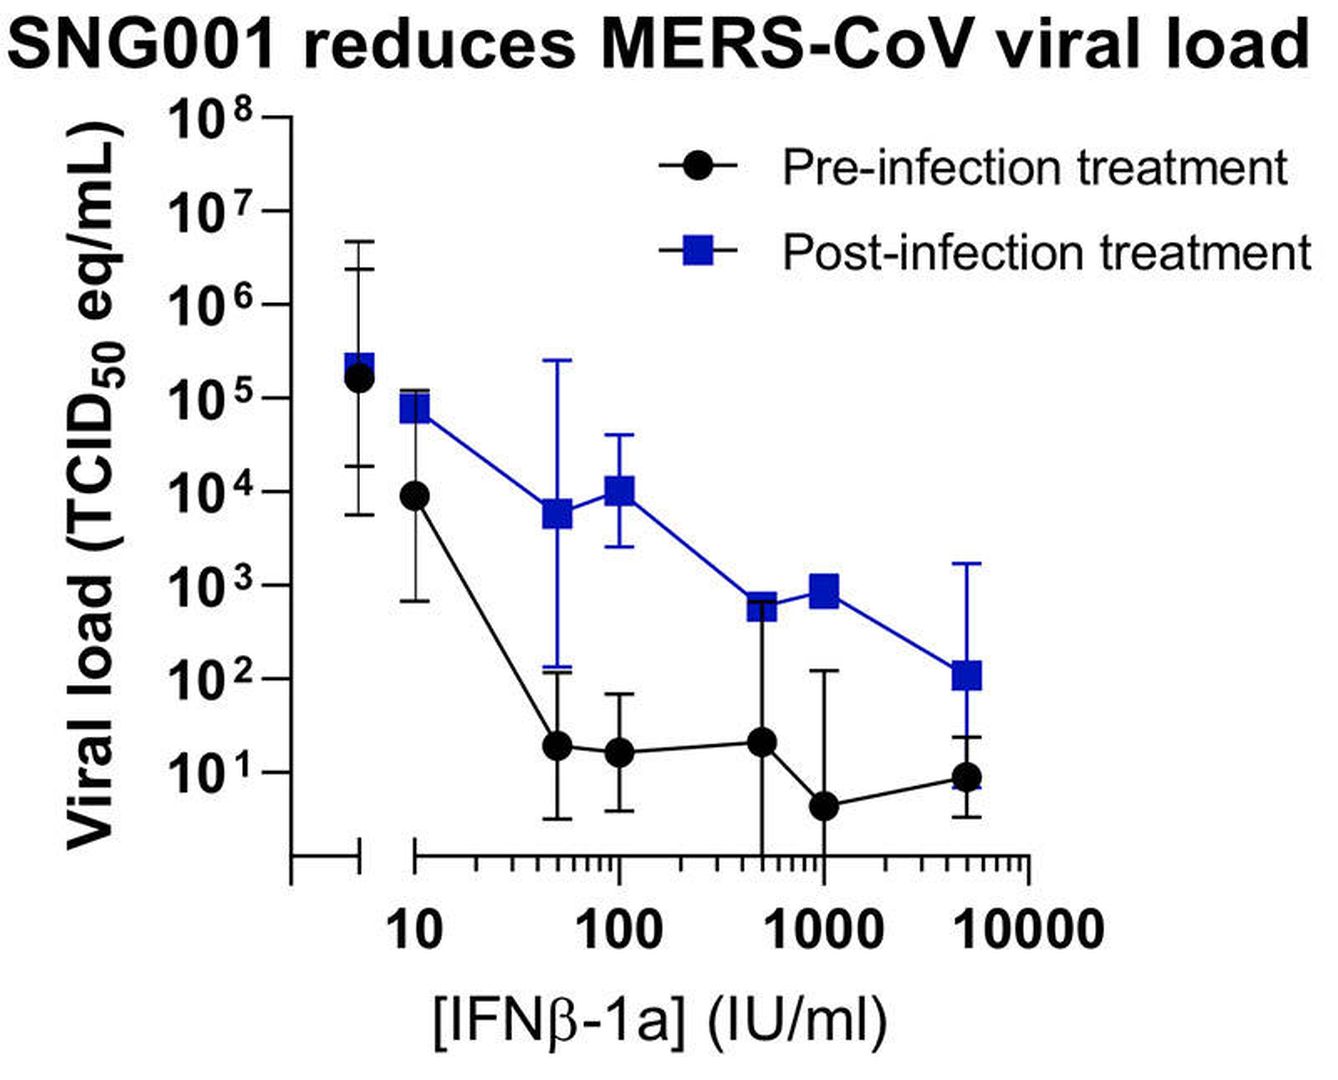 Reducción de la carga viral con el uso de interferón nebulizado. (Synairgen)